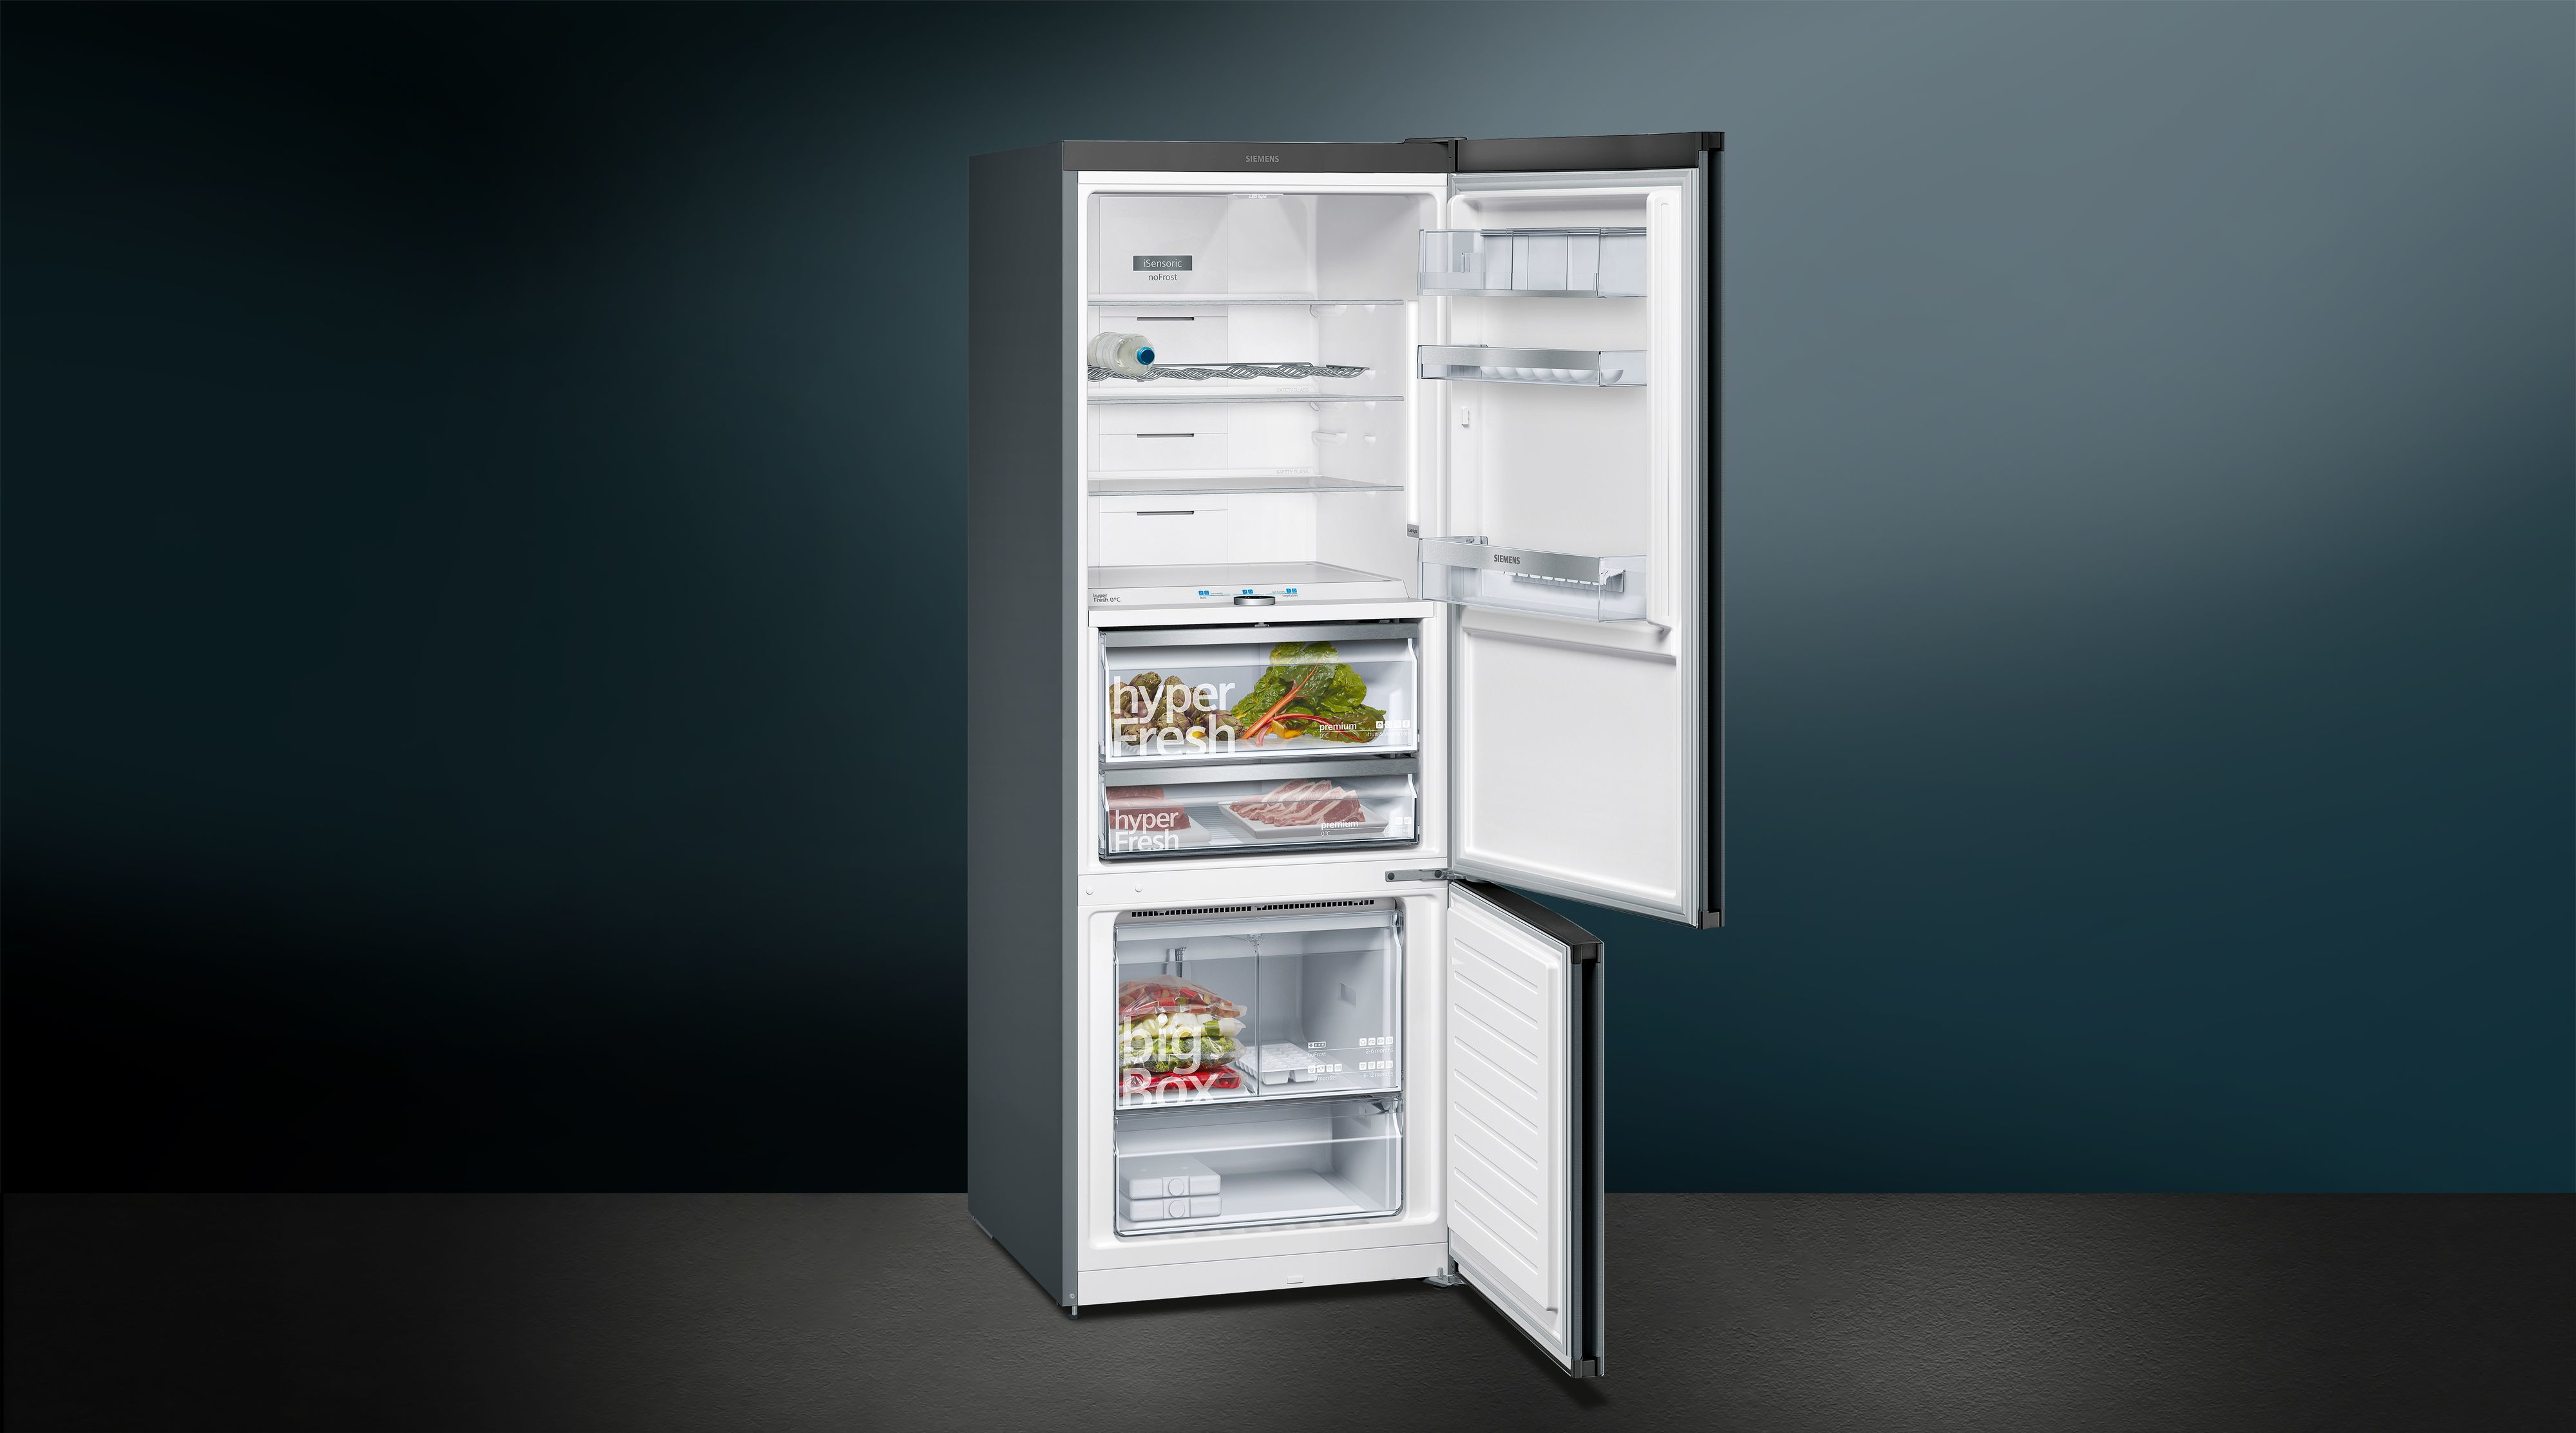 Siemens iQ700 KG56FPXDA frigorifero con congelatore Libera installazione Nero 480 L A+++ [KG56FPXDA]